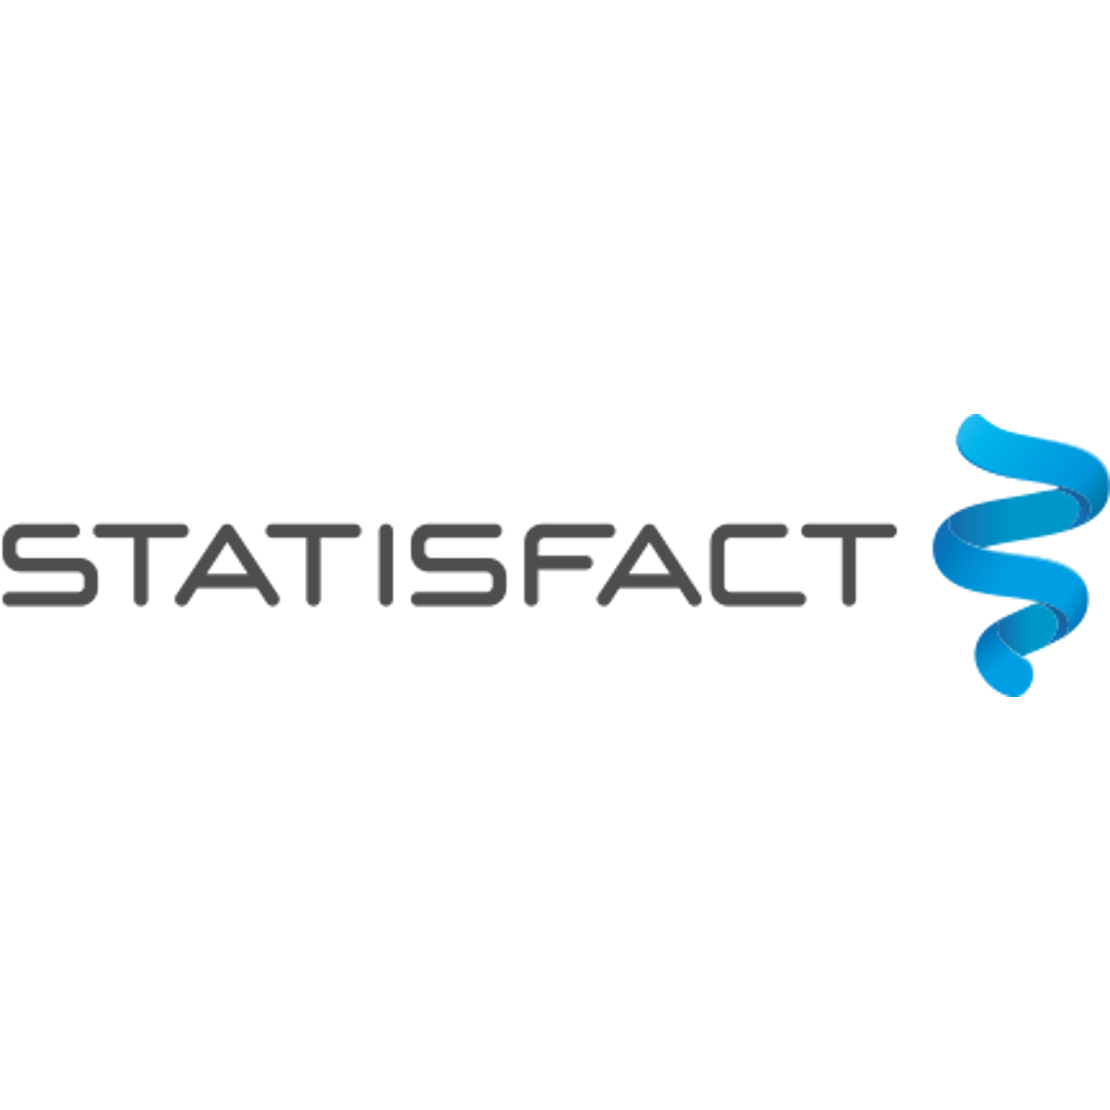 Statisfact